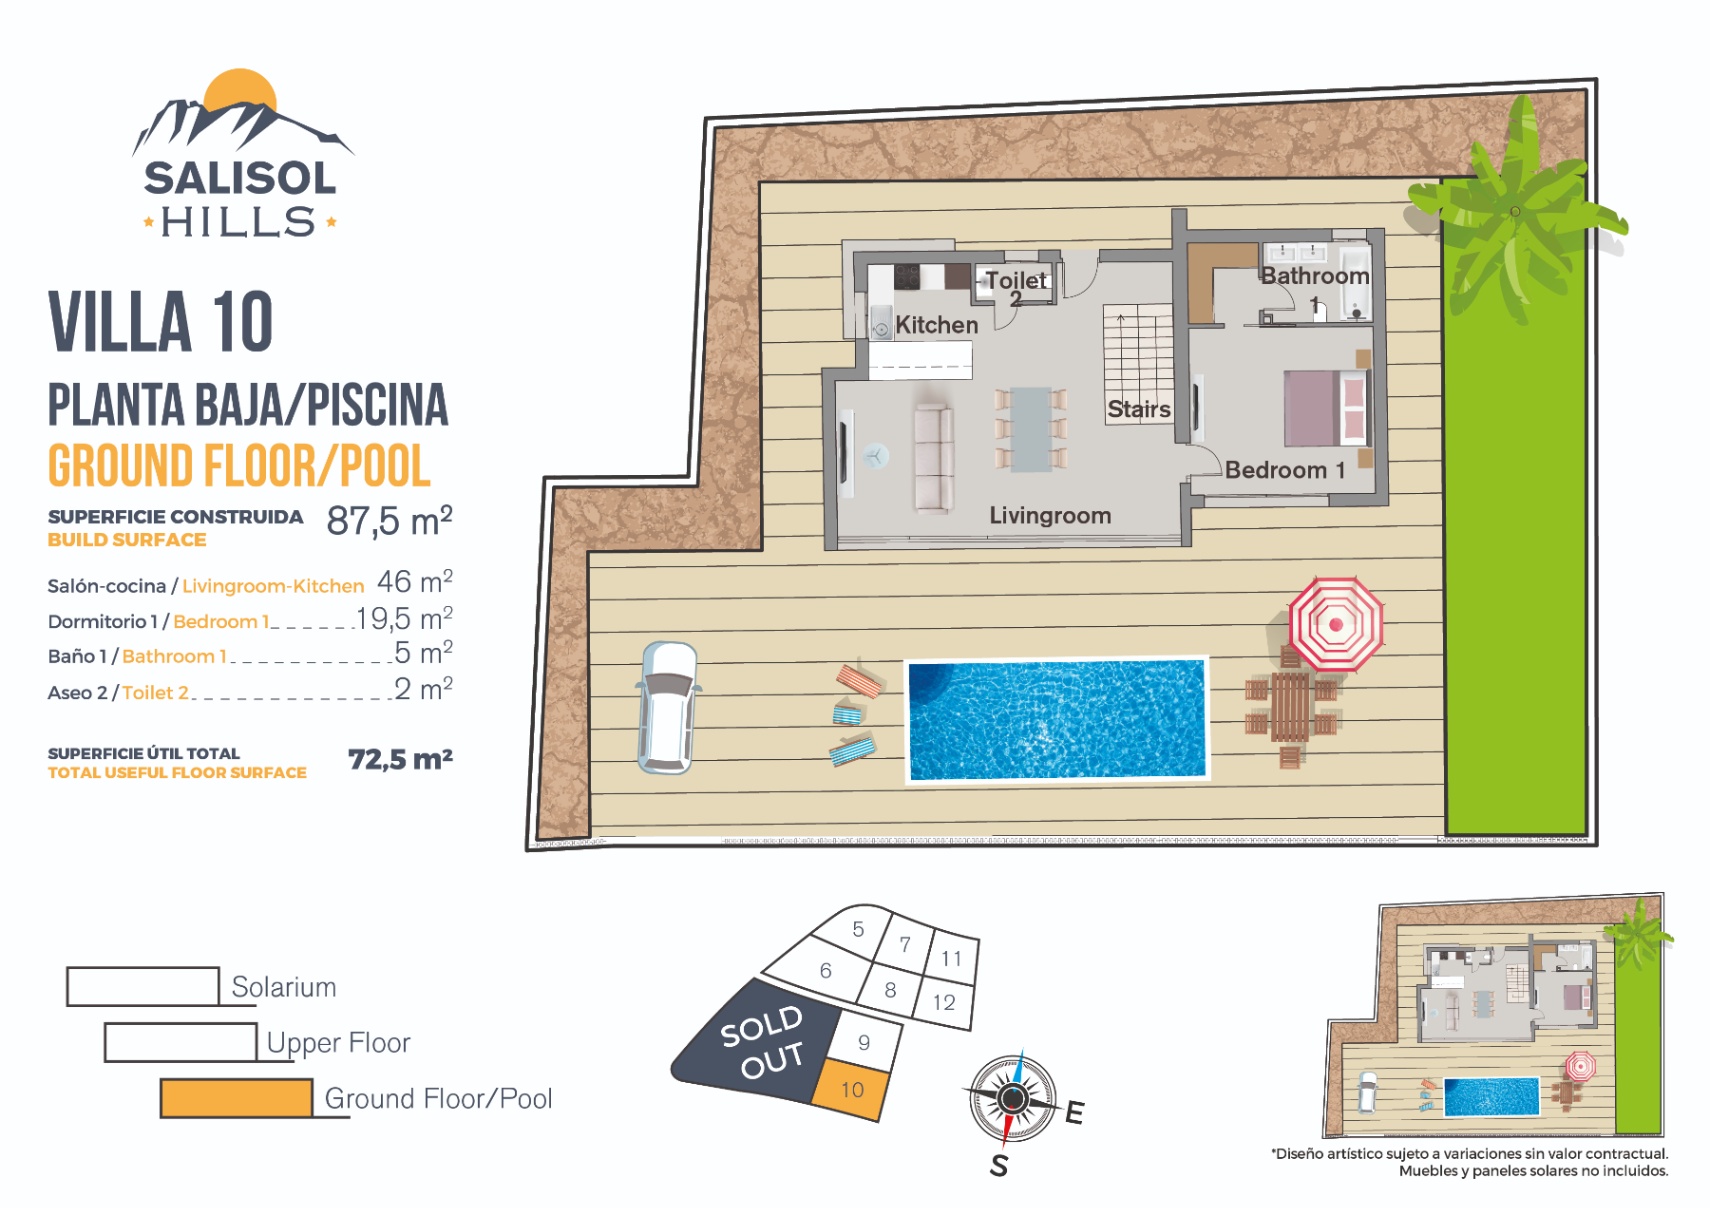 Nieuwbouw villa te koop in Finestrat, Costa Blanca